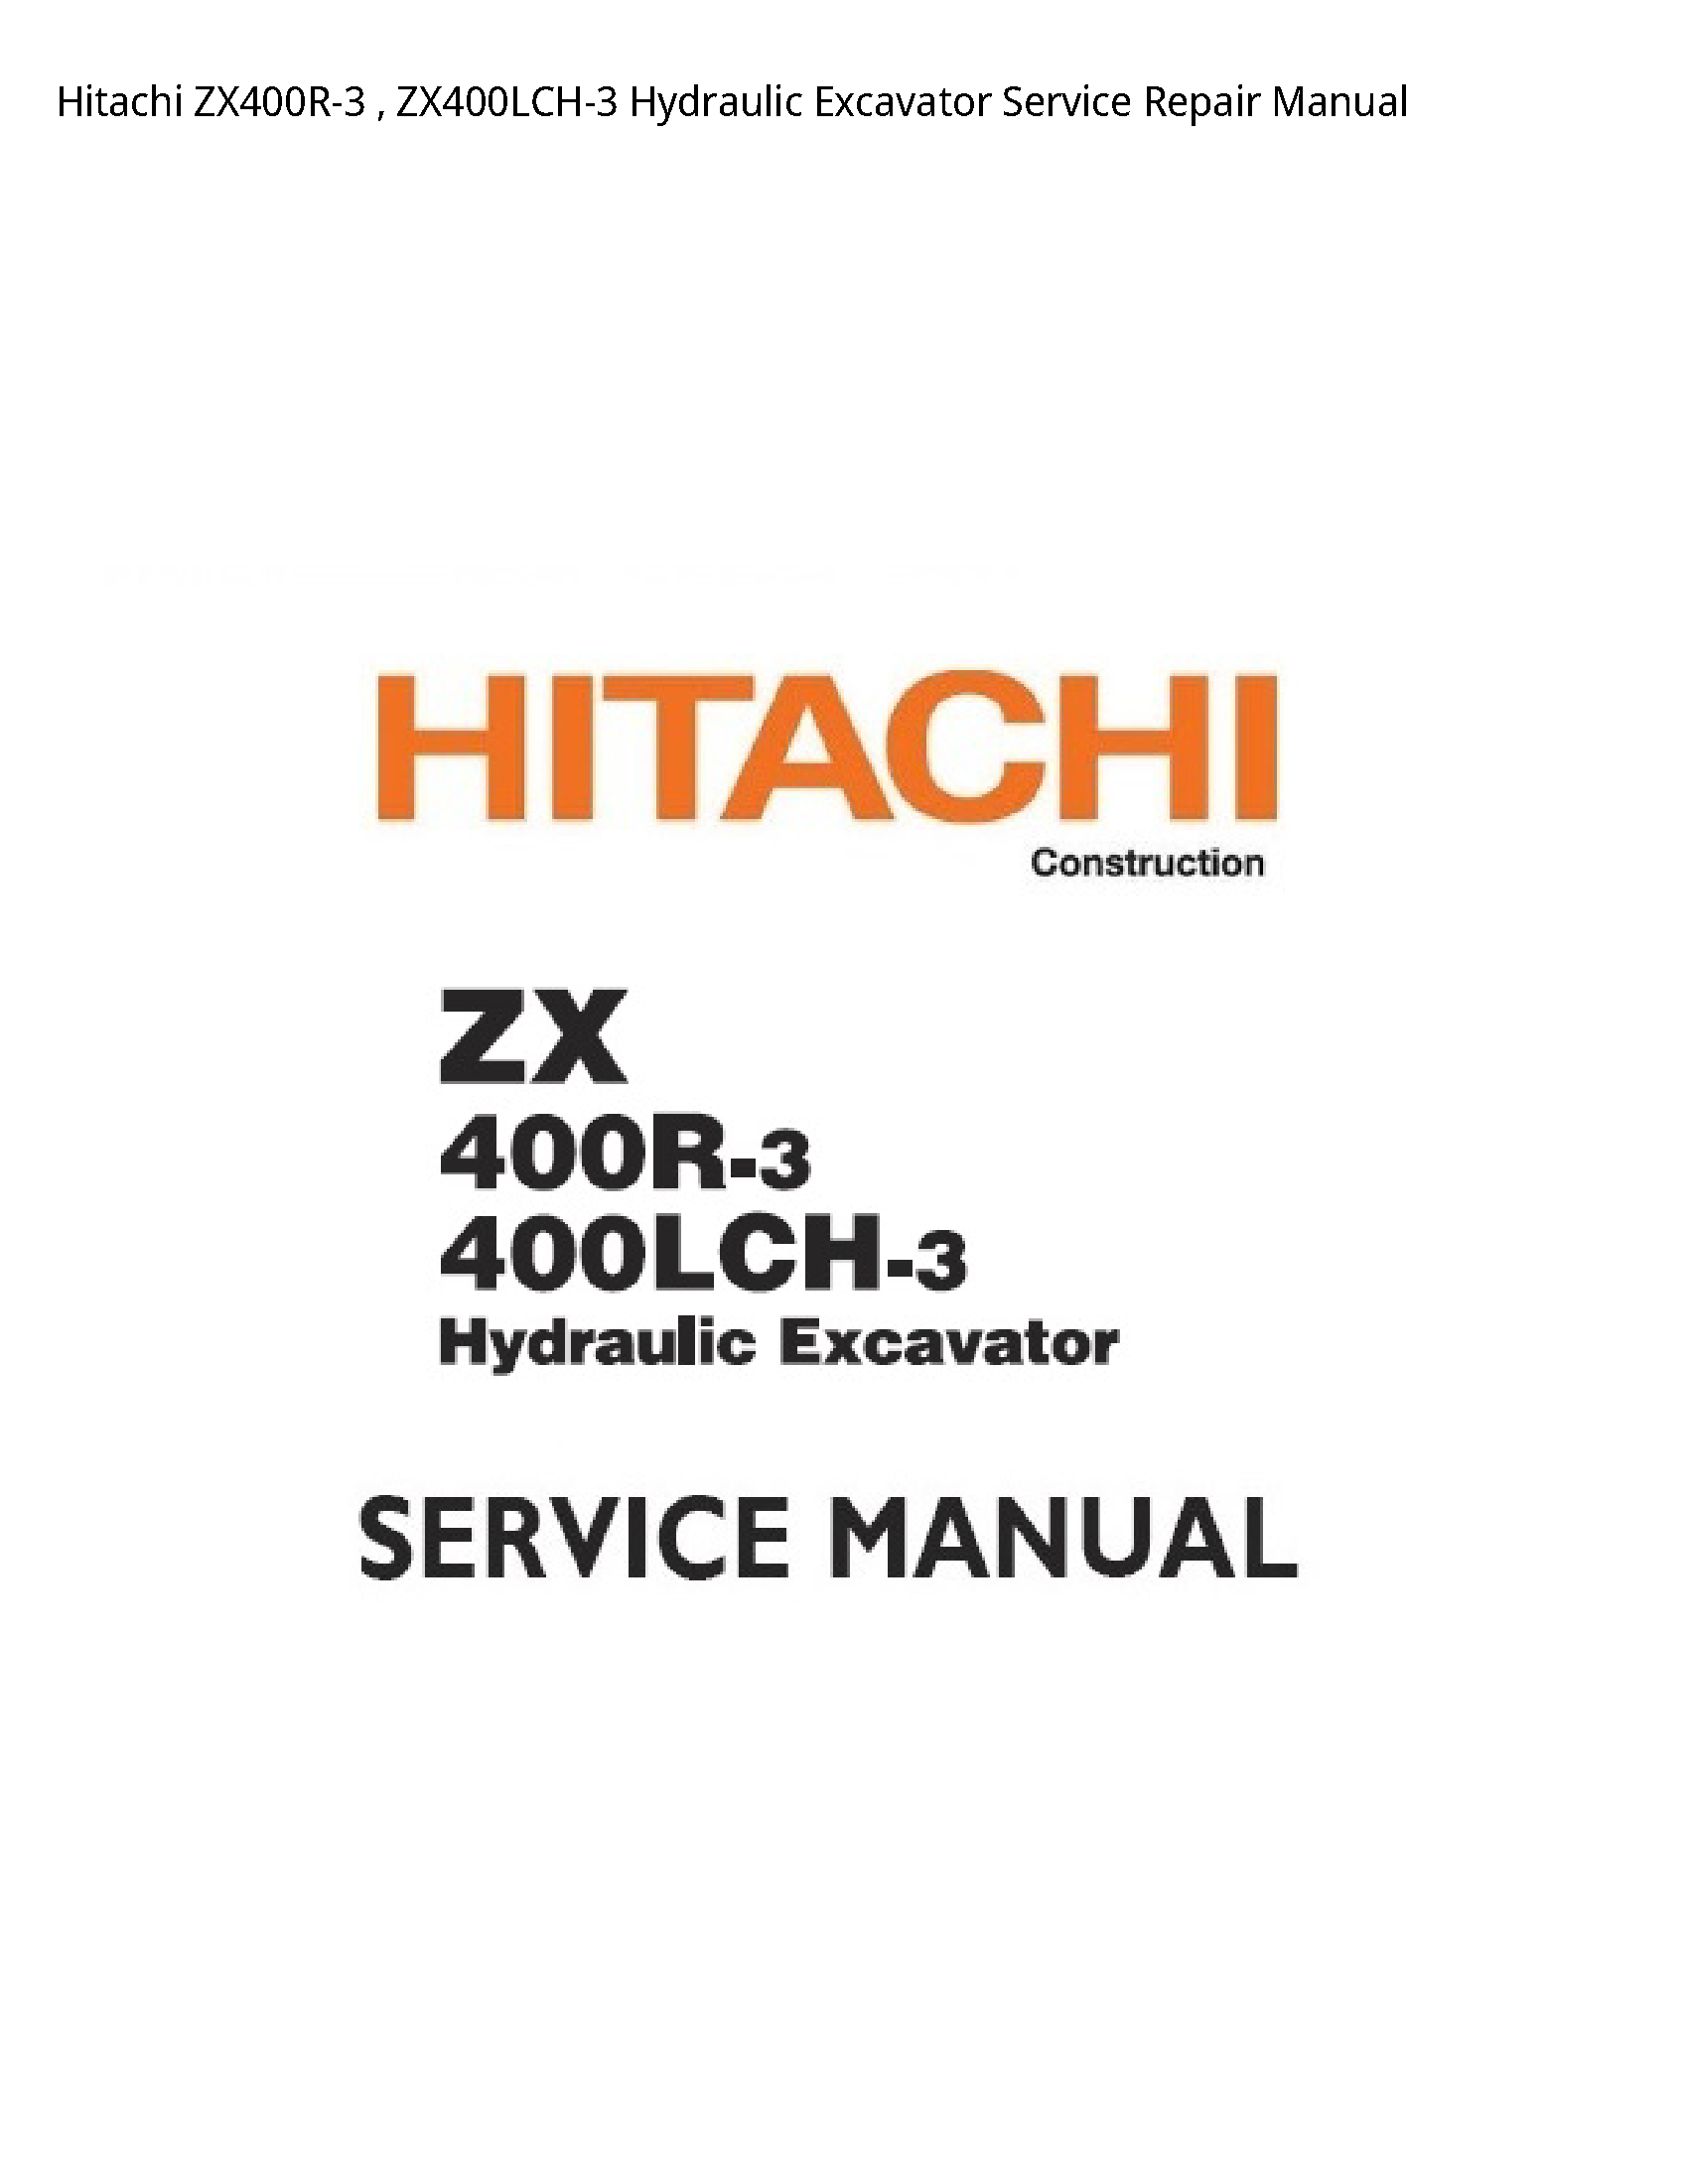 Hitachi ZX400R-3 Hydraulic Excavator manual